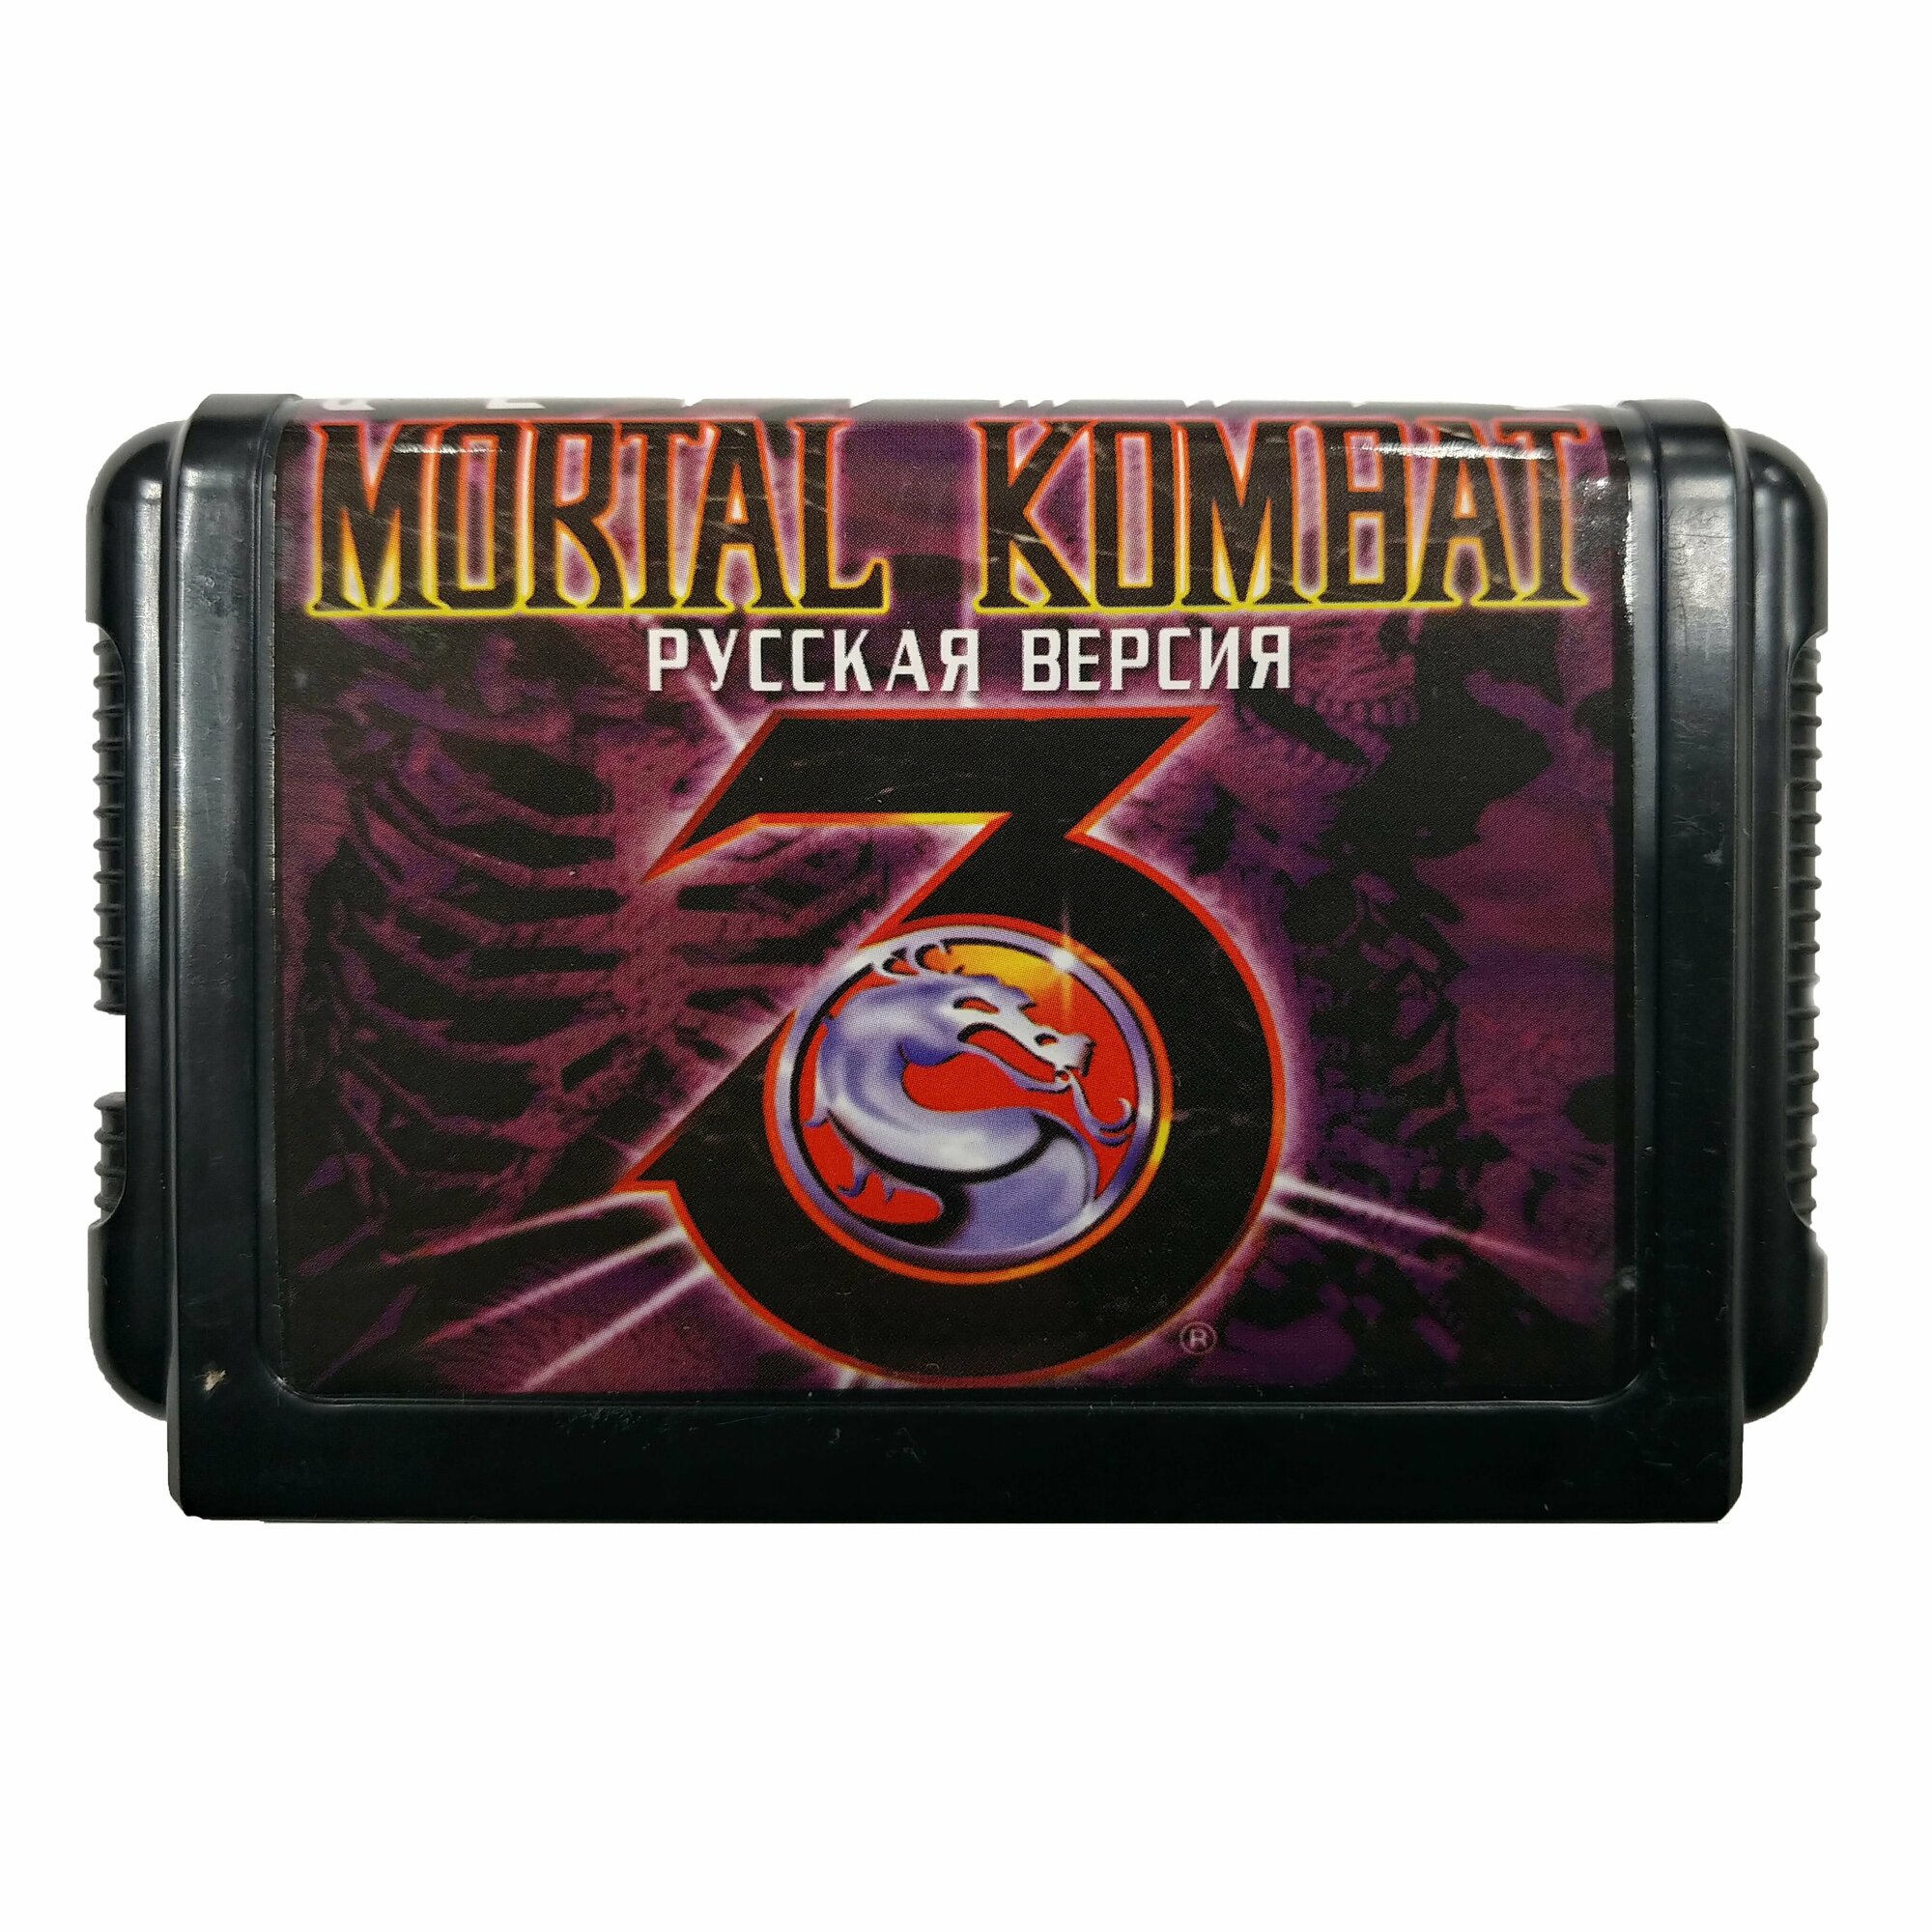 Картридж для игровой видеоприставки Mortal Kombat 3 Ultimate, Sega 16 bit русская версия